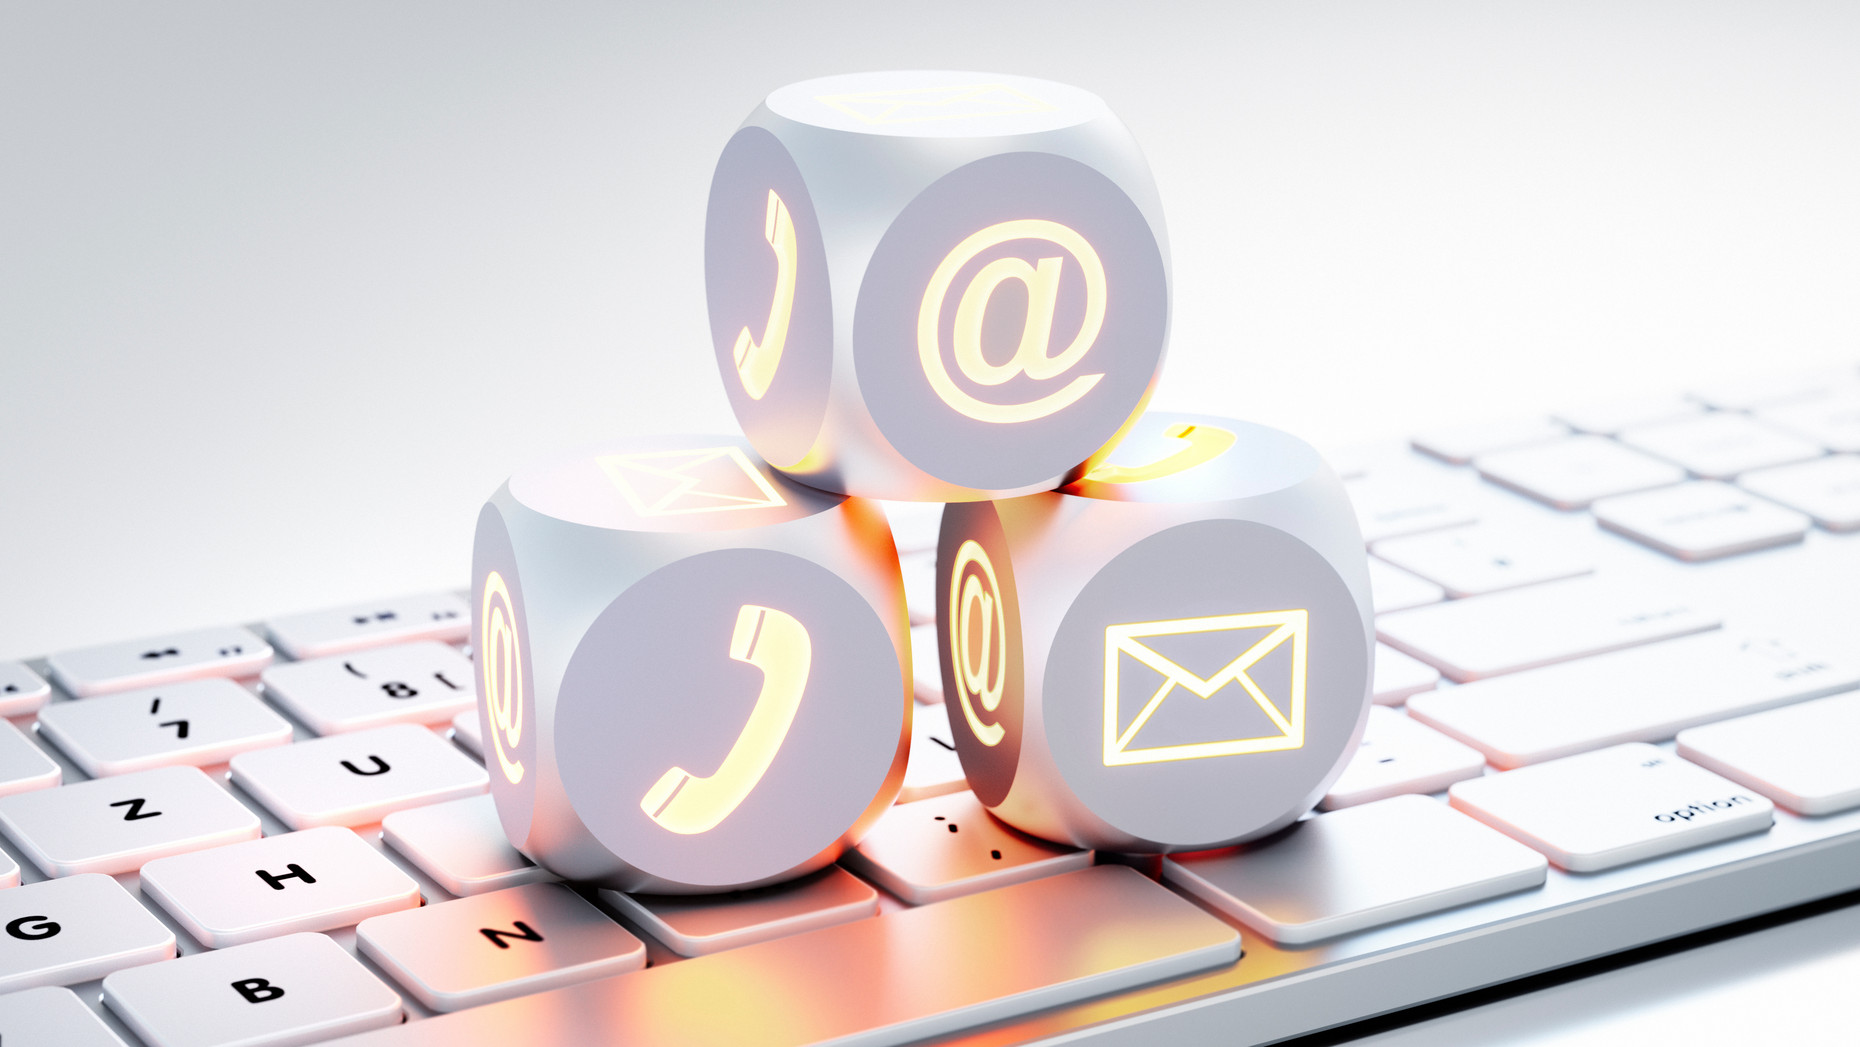 Drei Würfel mit Icons für Kommunikationskanäle wie Brief, Telefon auf einer Tastatur liegend